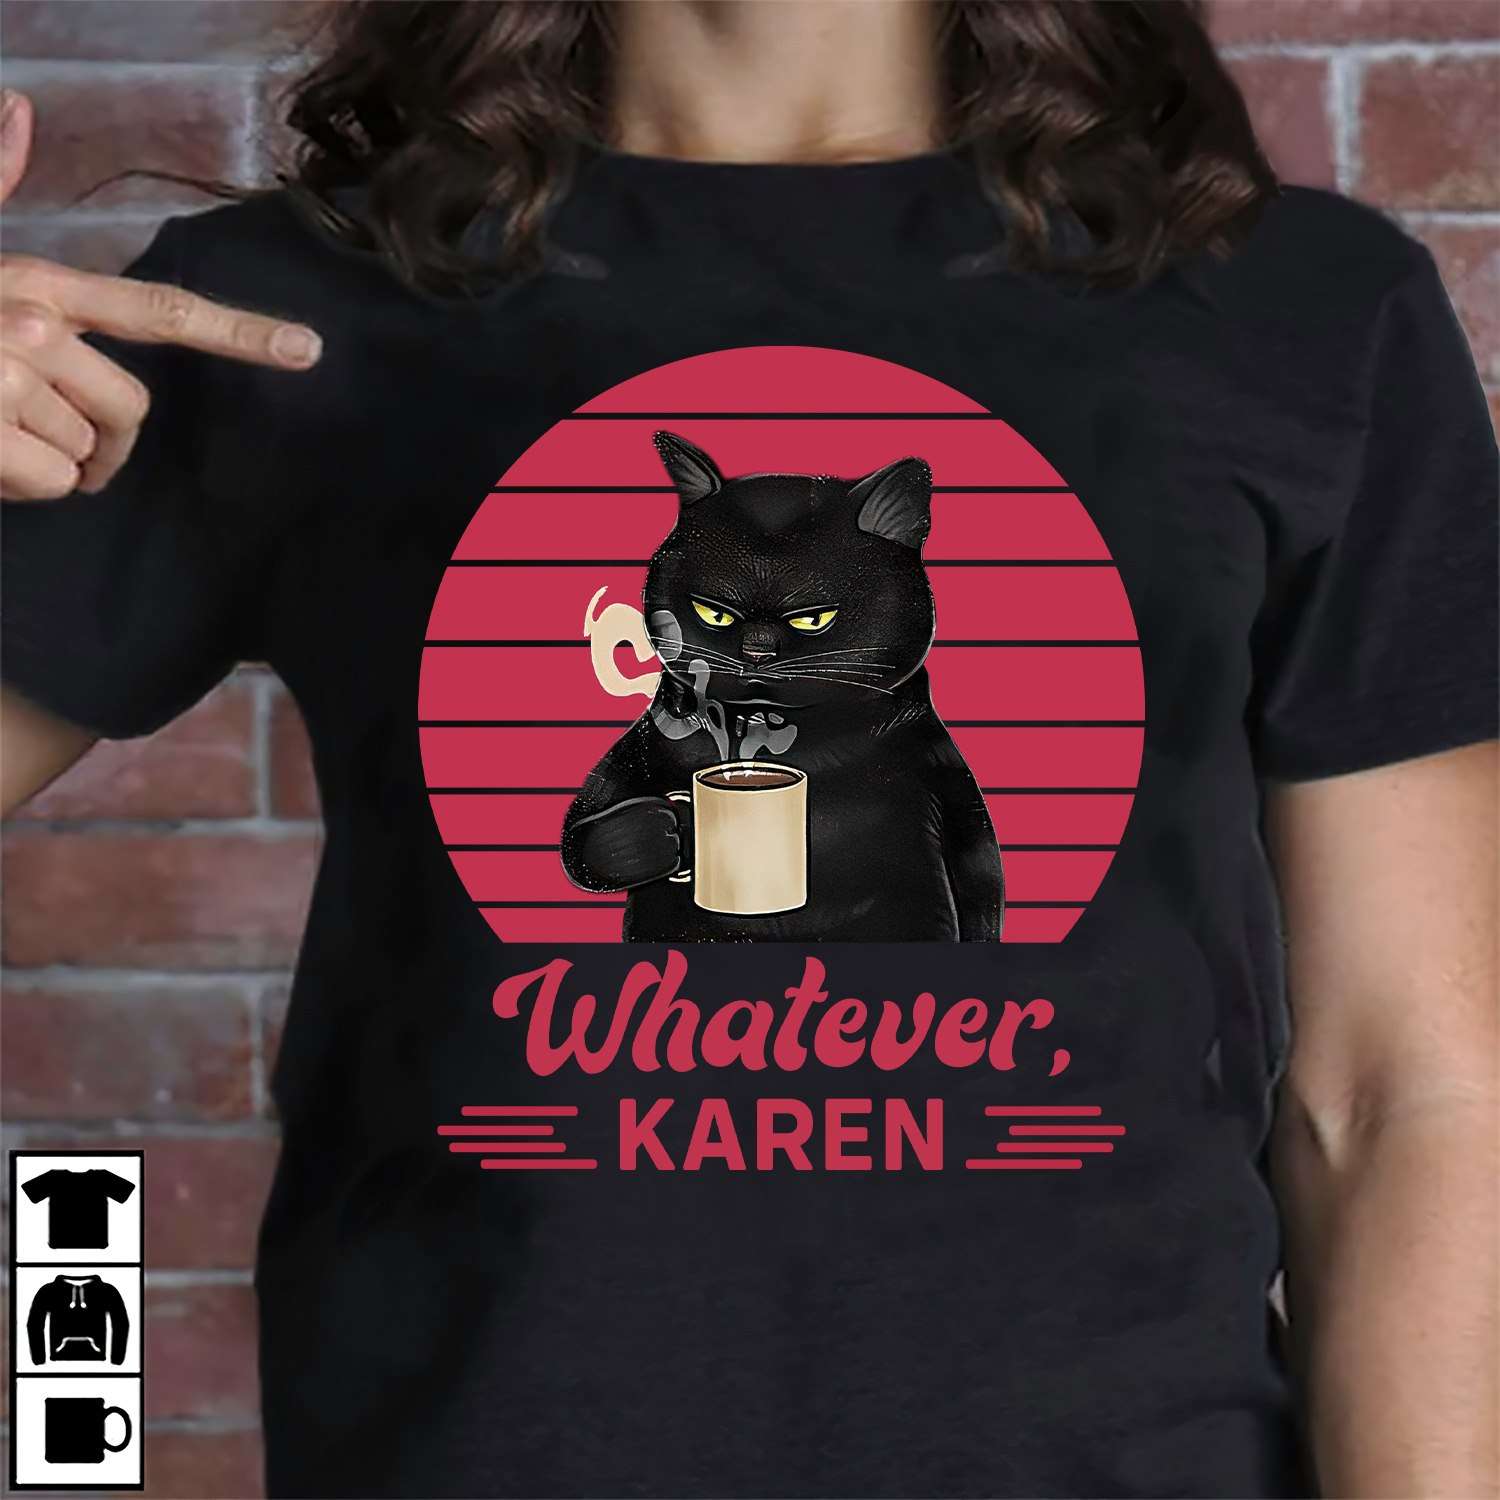 Whatever, Karen - Black cat whatever Karen shirt, Funny Karen Meme